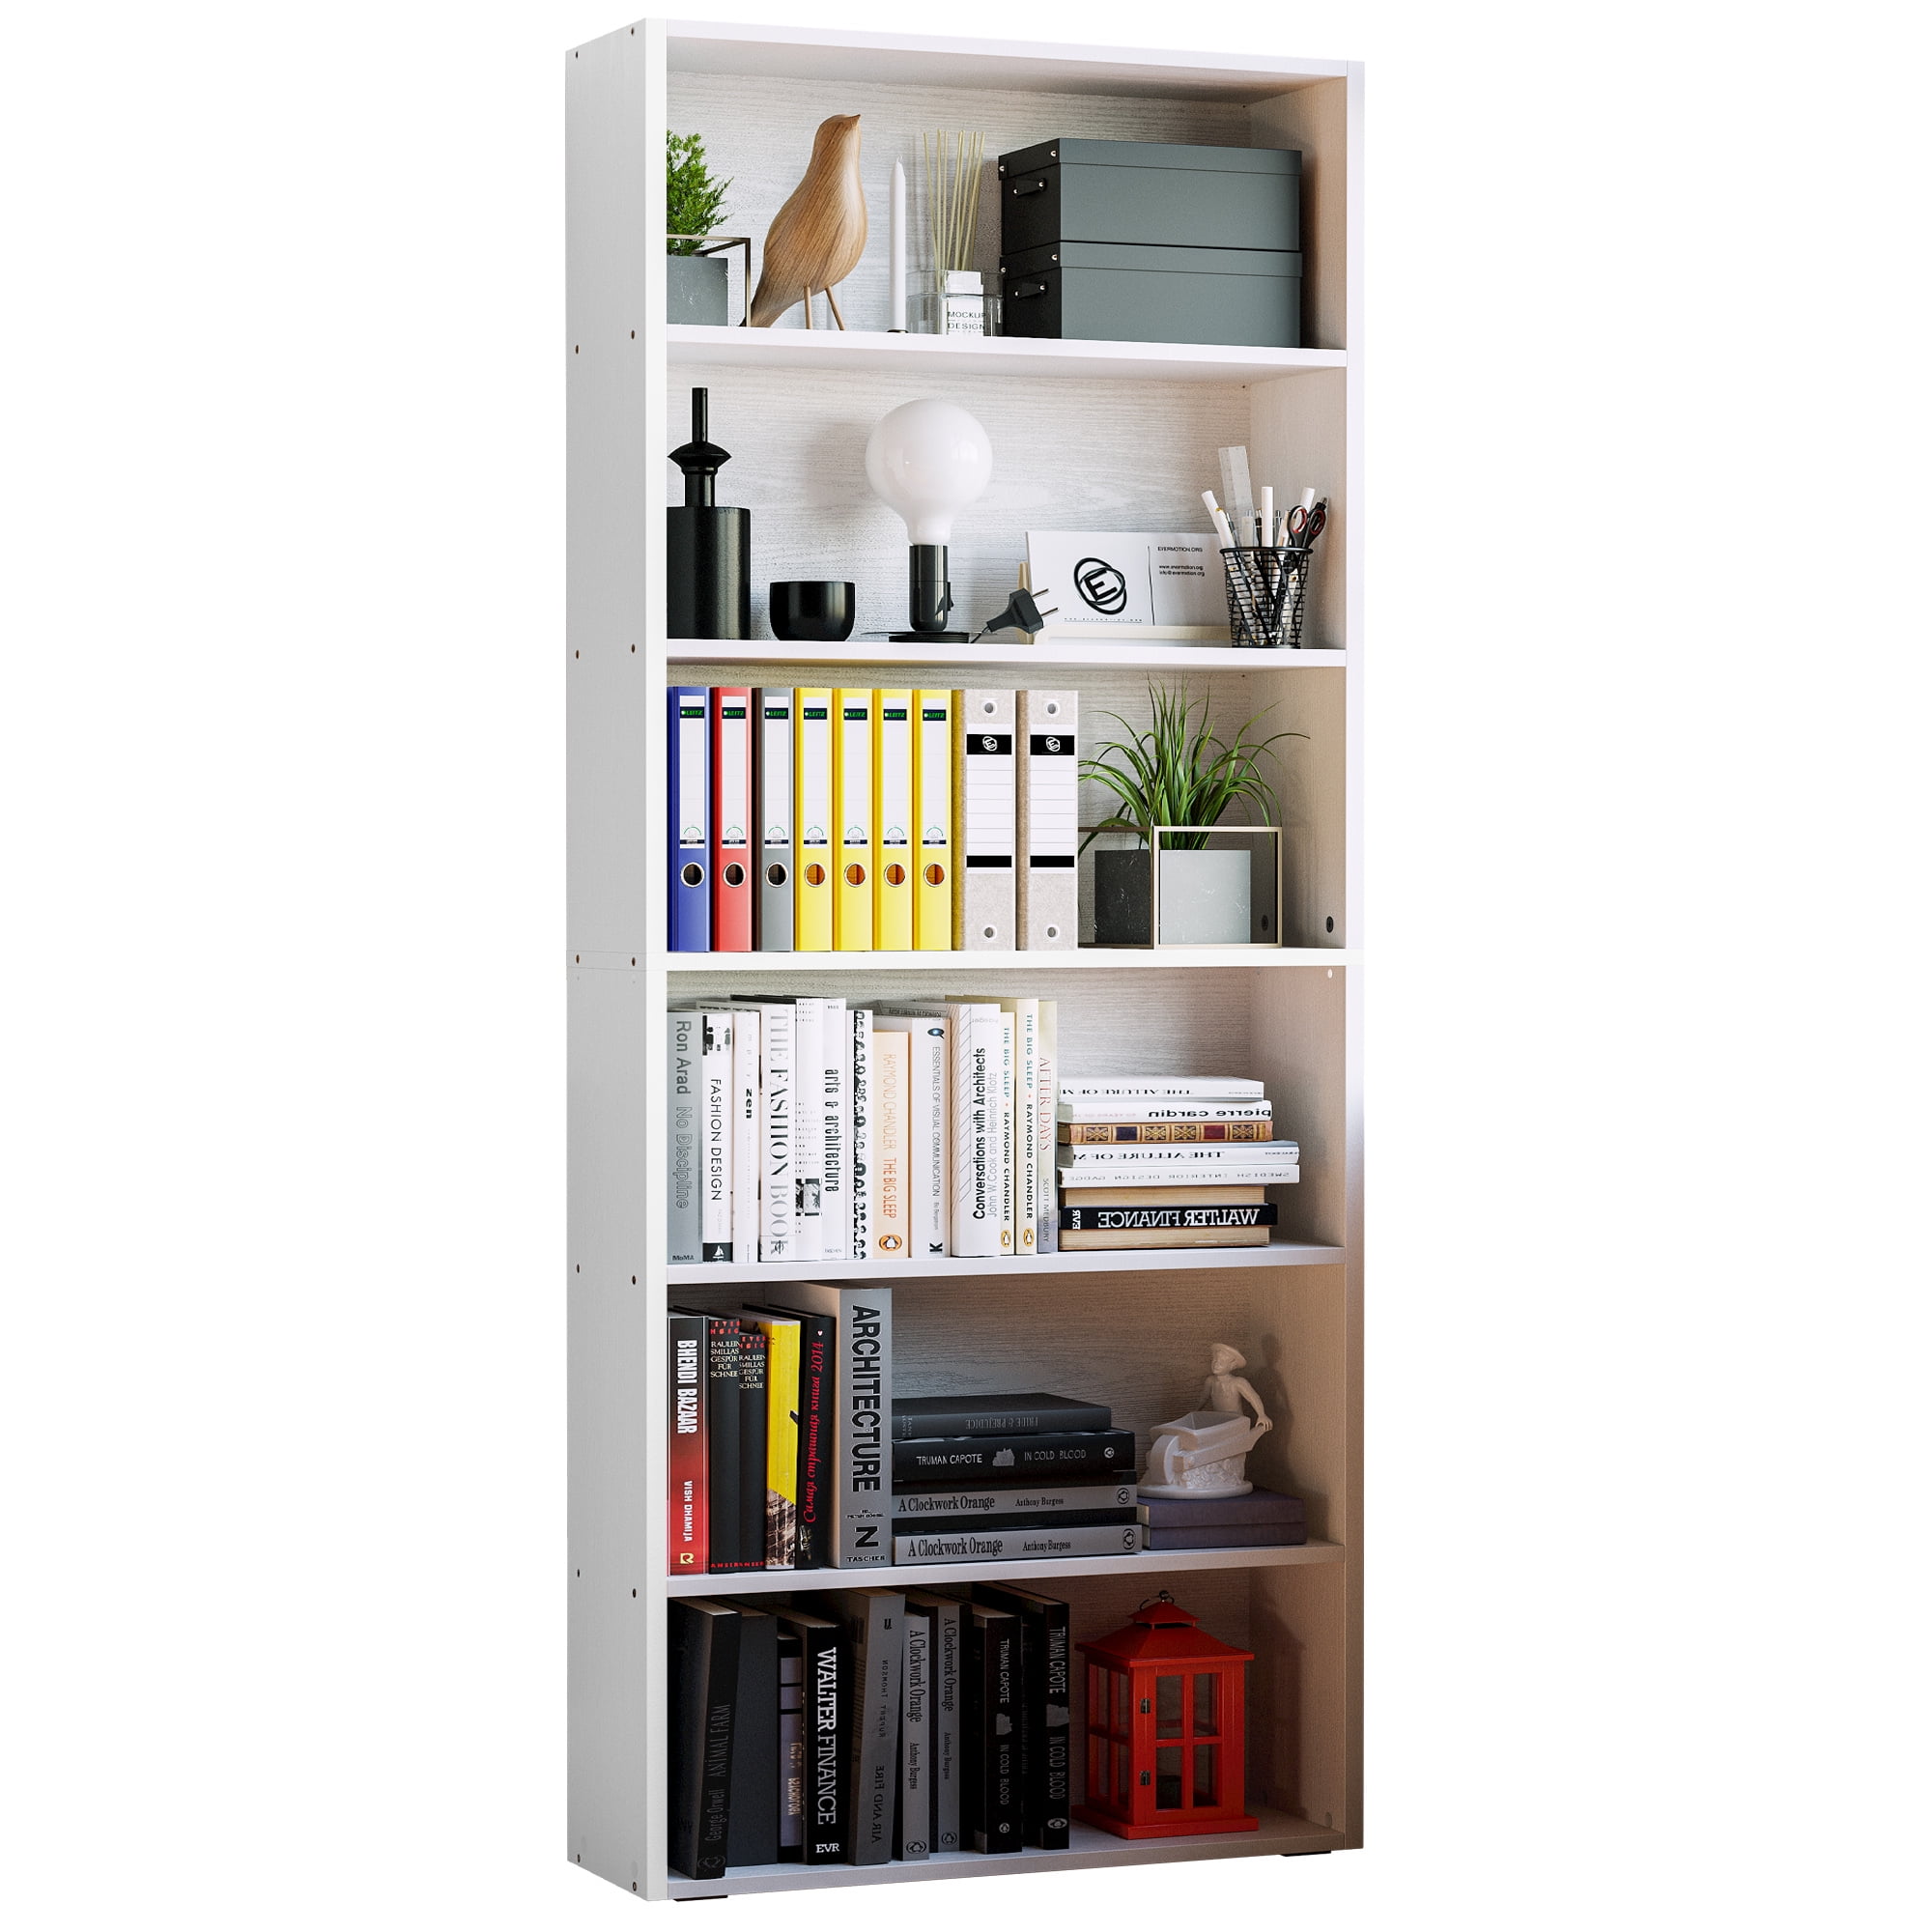 IRONCK Bookshelves Floor Standing 6 Tier 70in Tall for Home Office, White